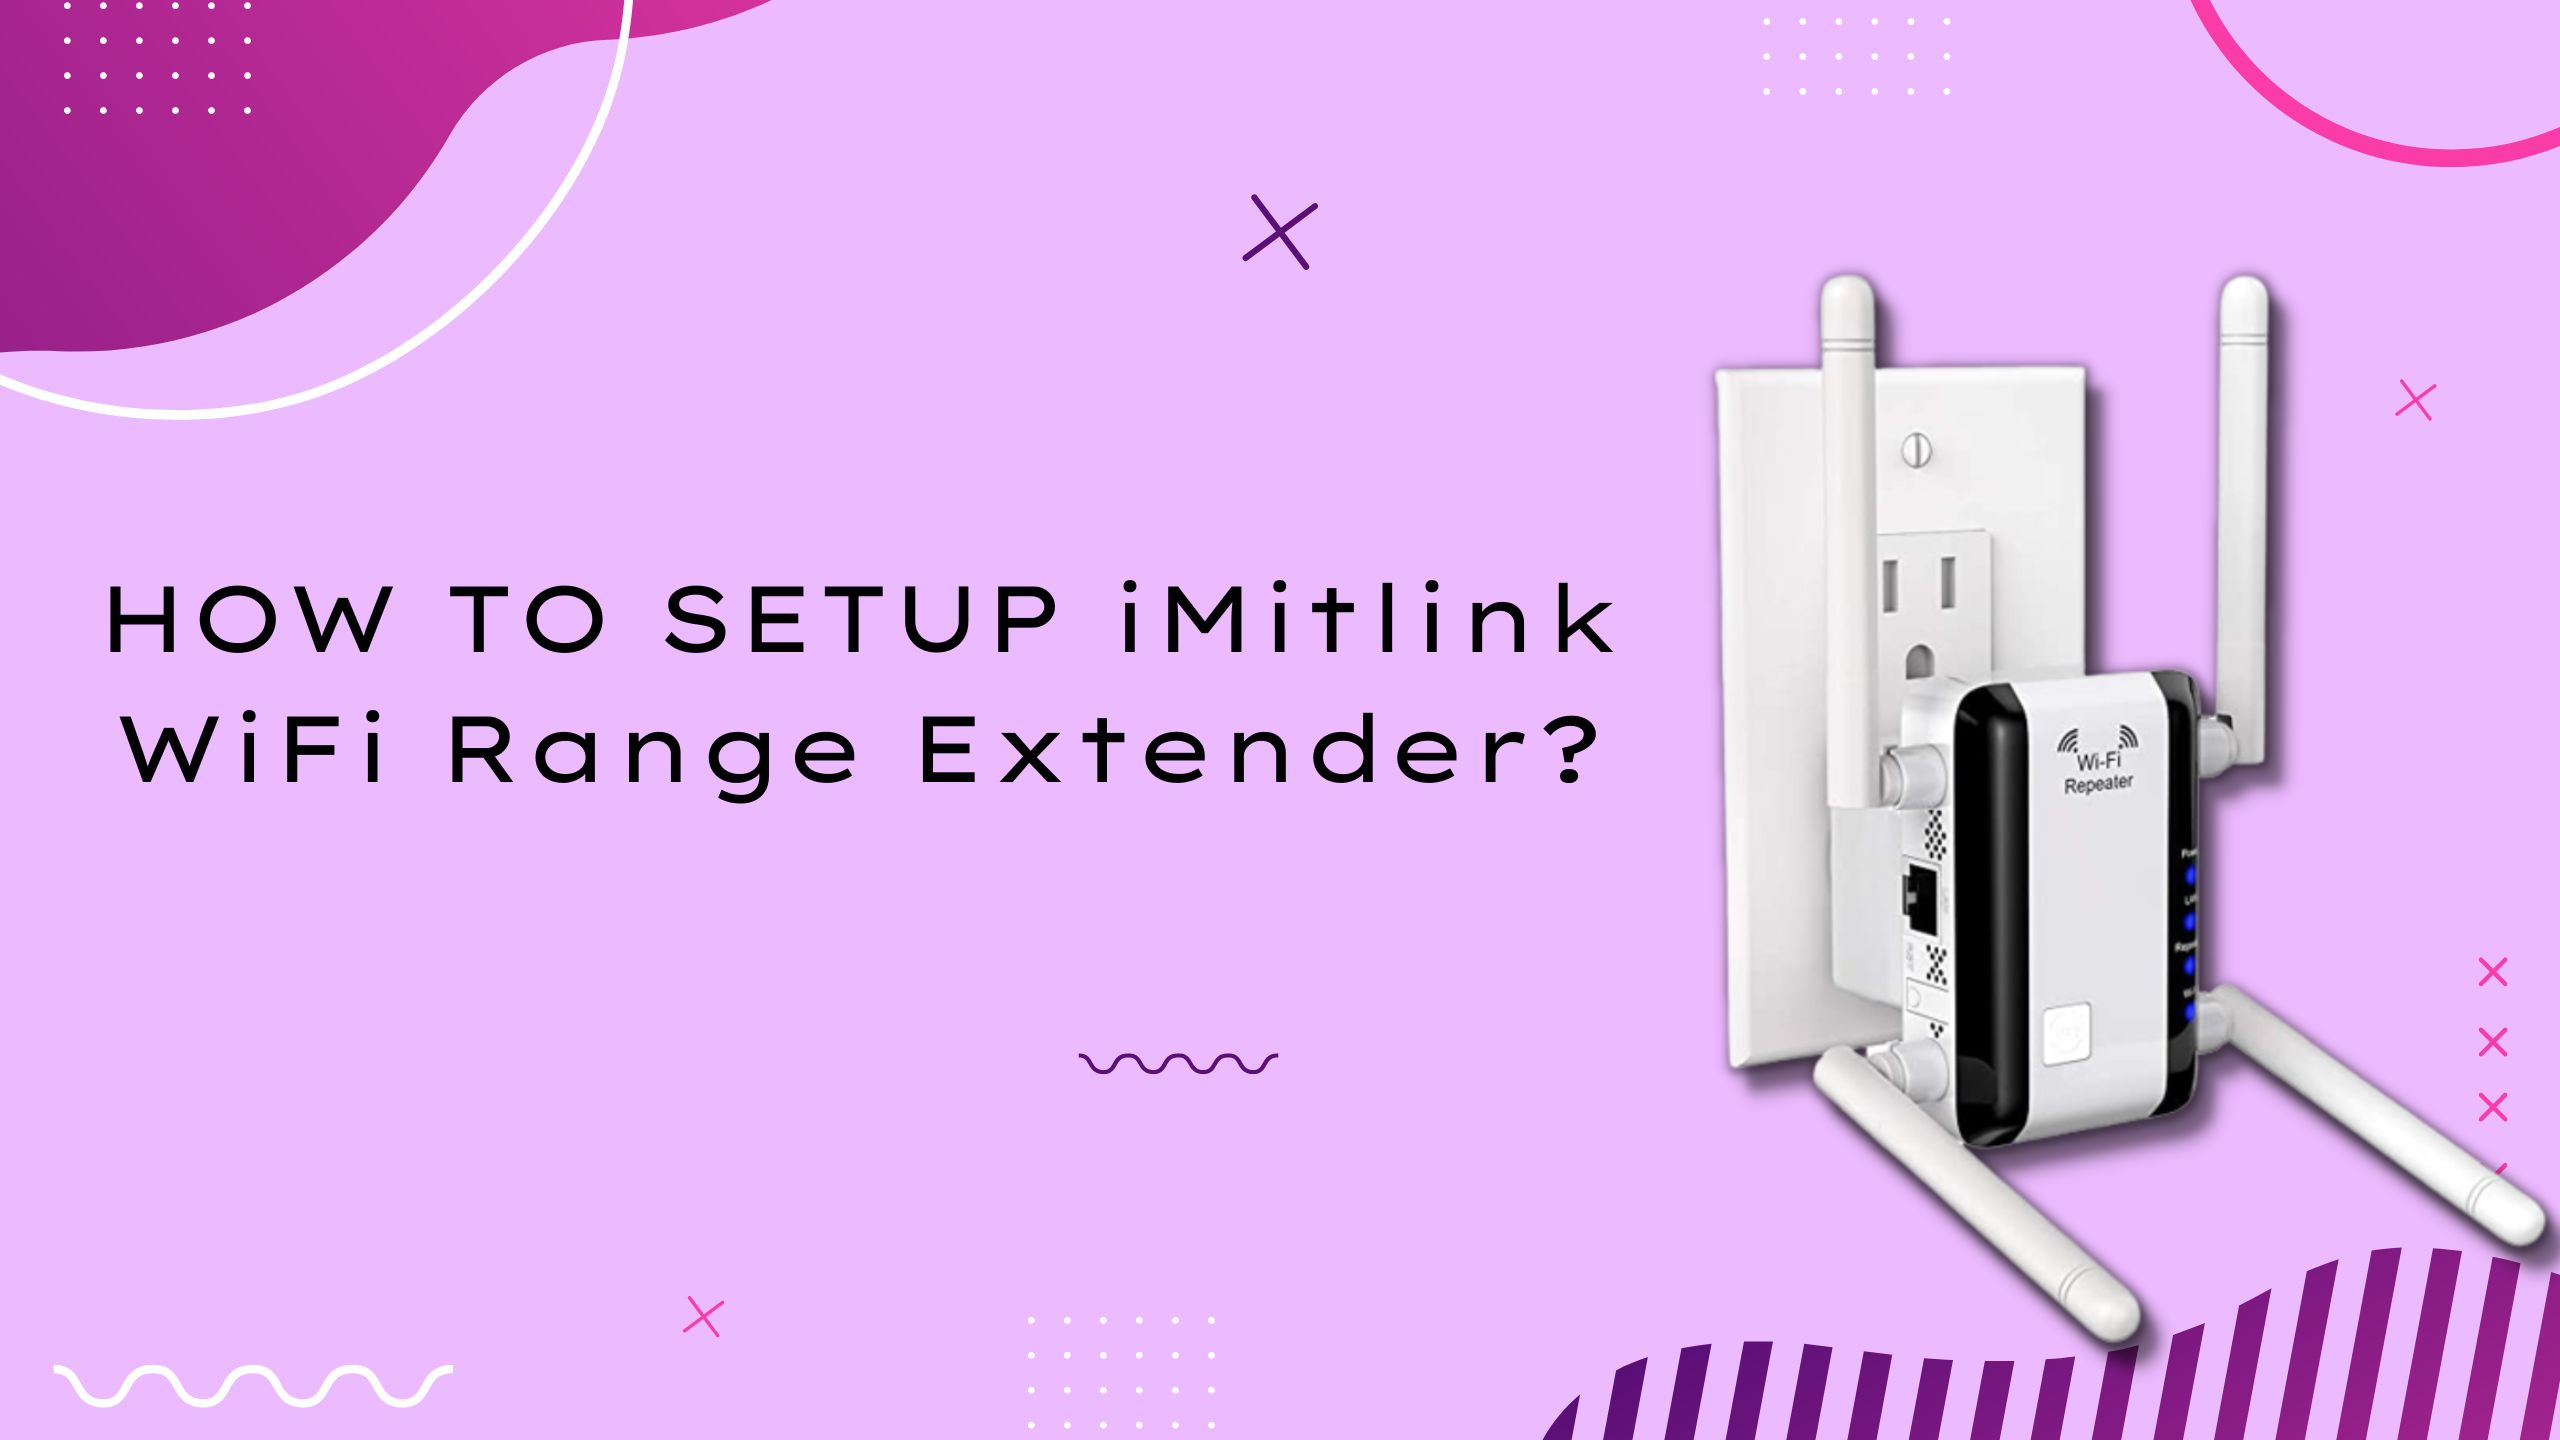 SETUP iMitlink WiFi Range Extender